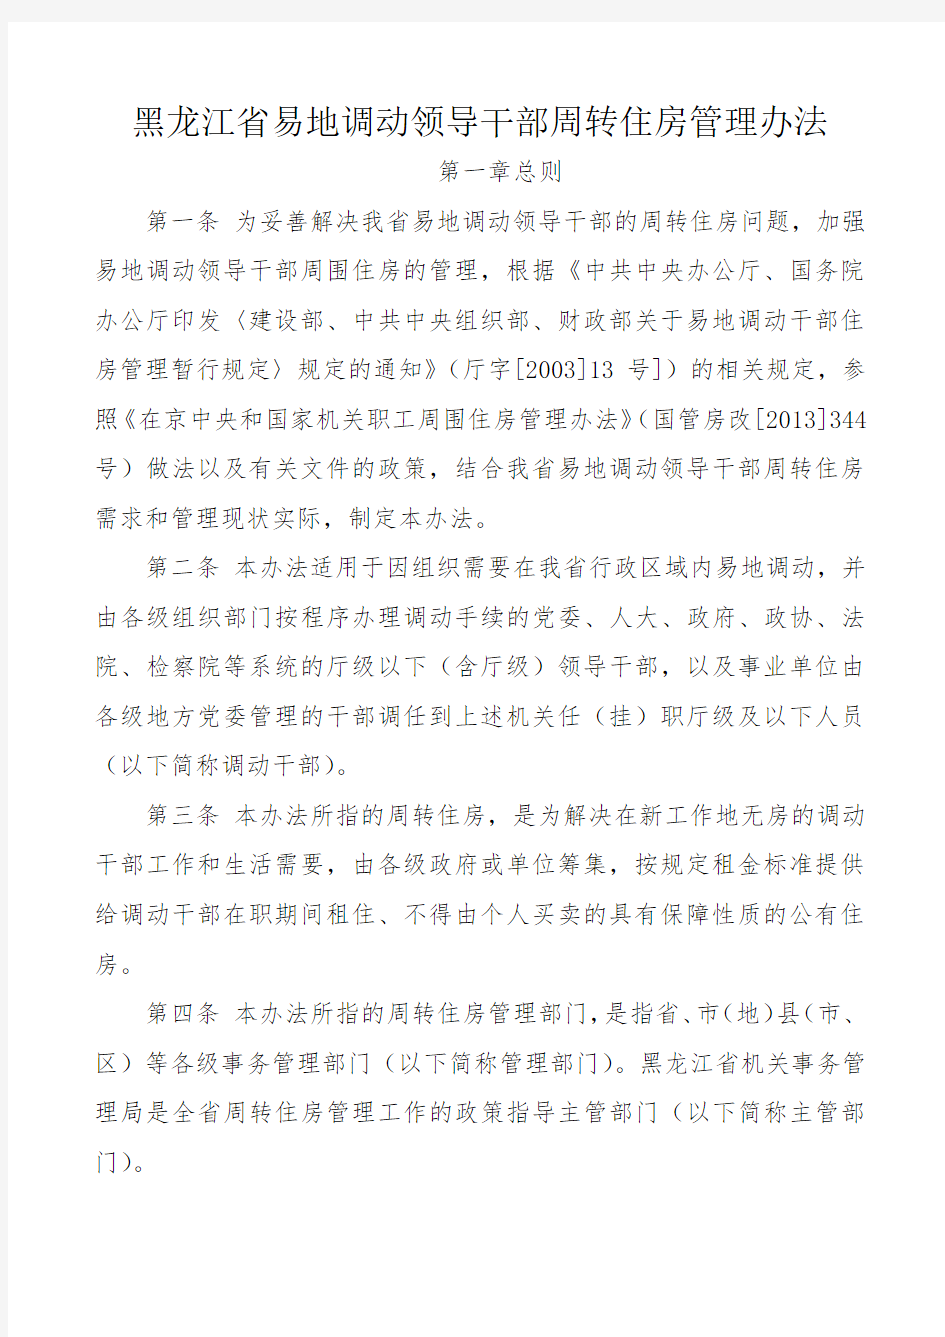 黑龙江省易地调动领导干部周转住房管理办法